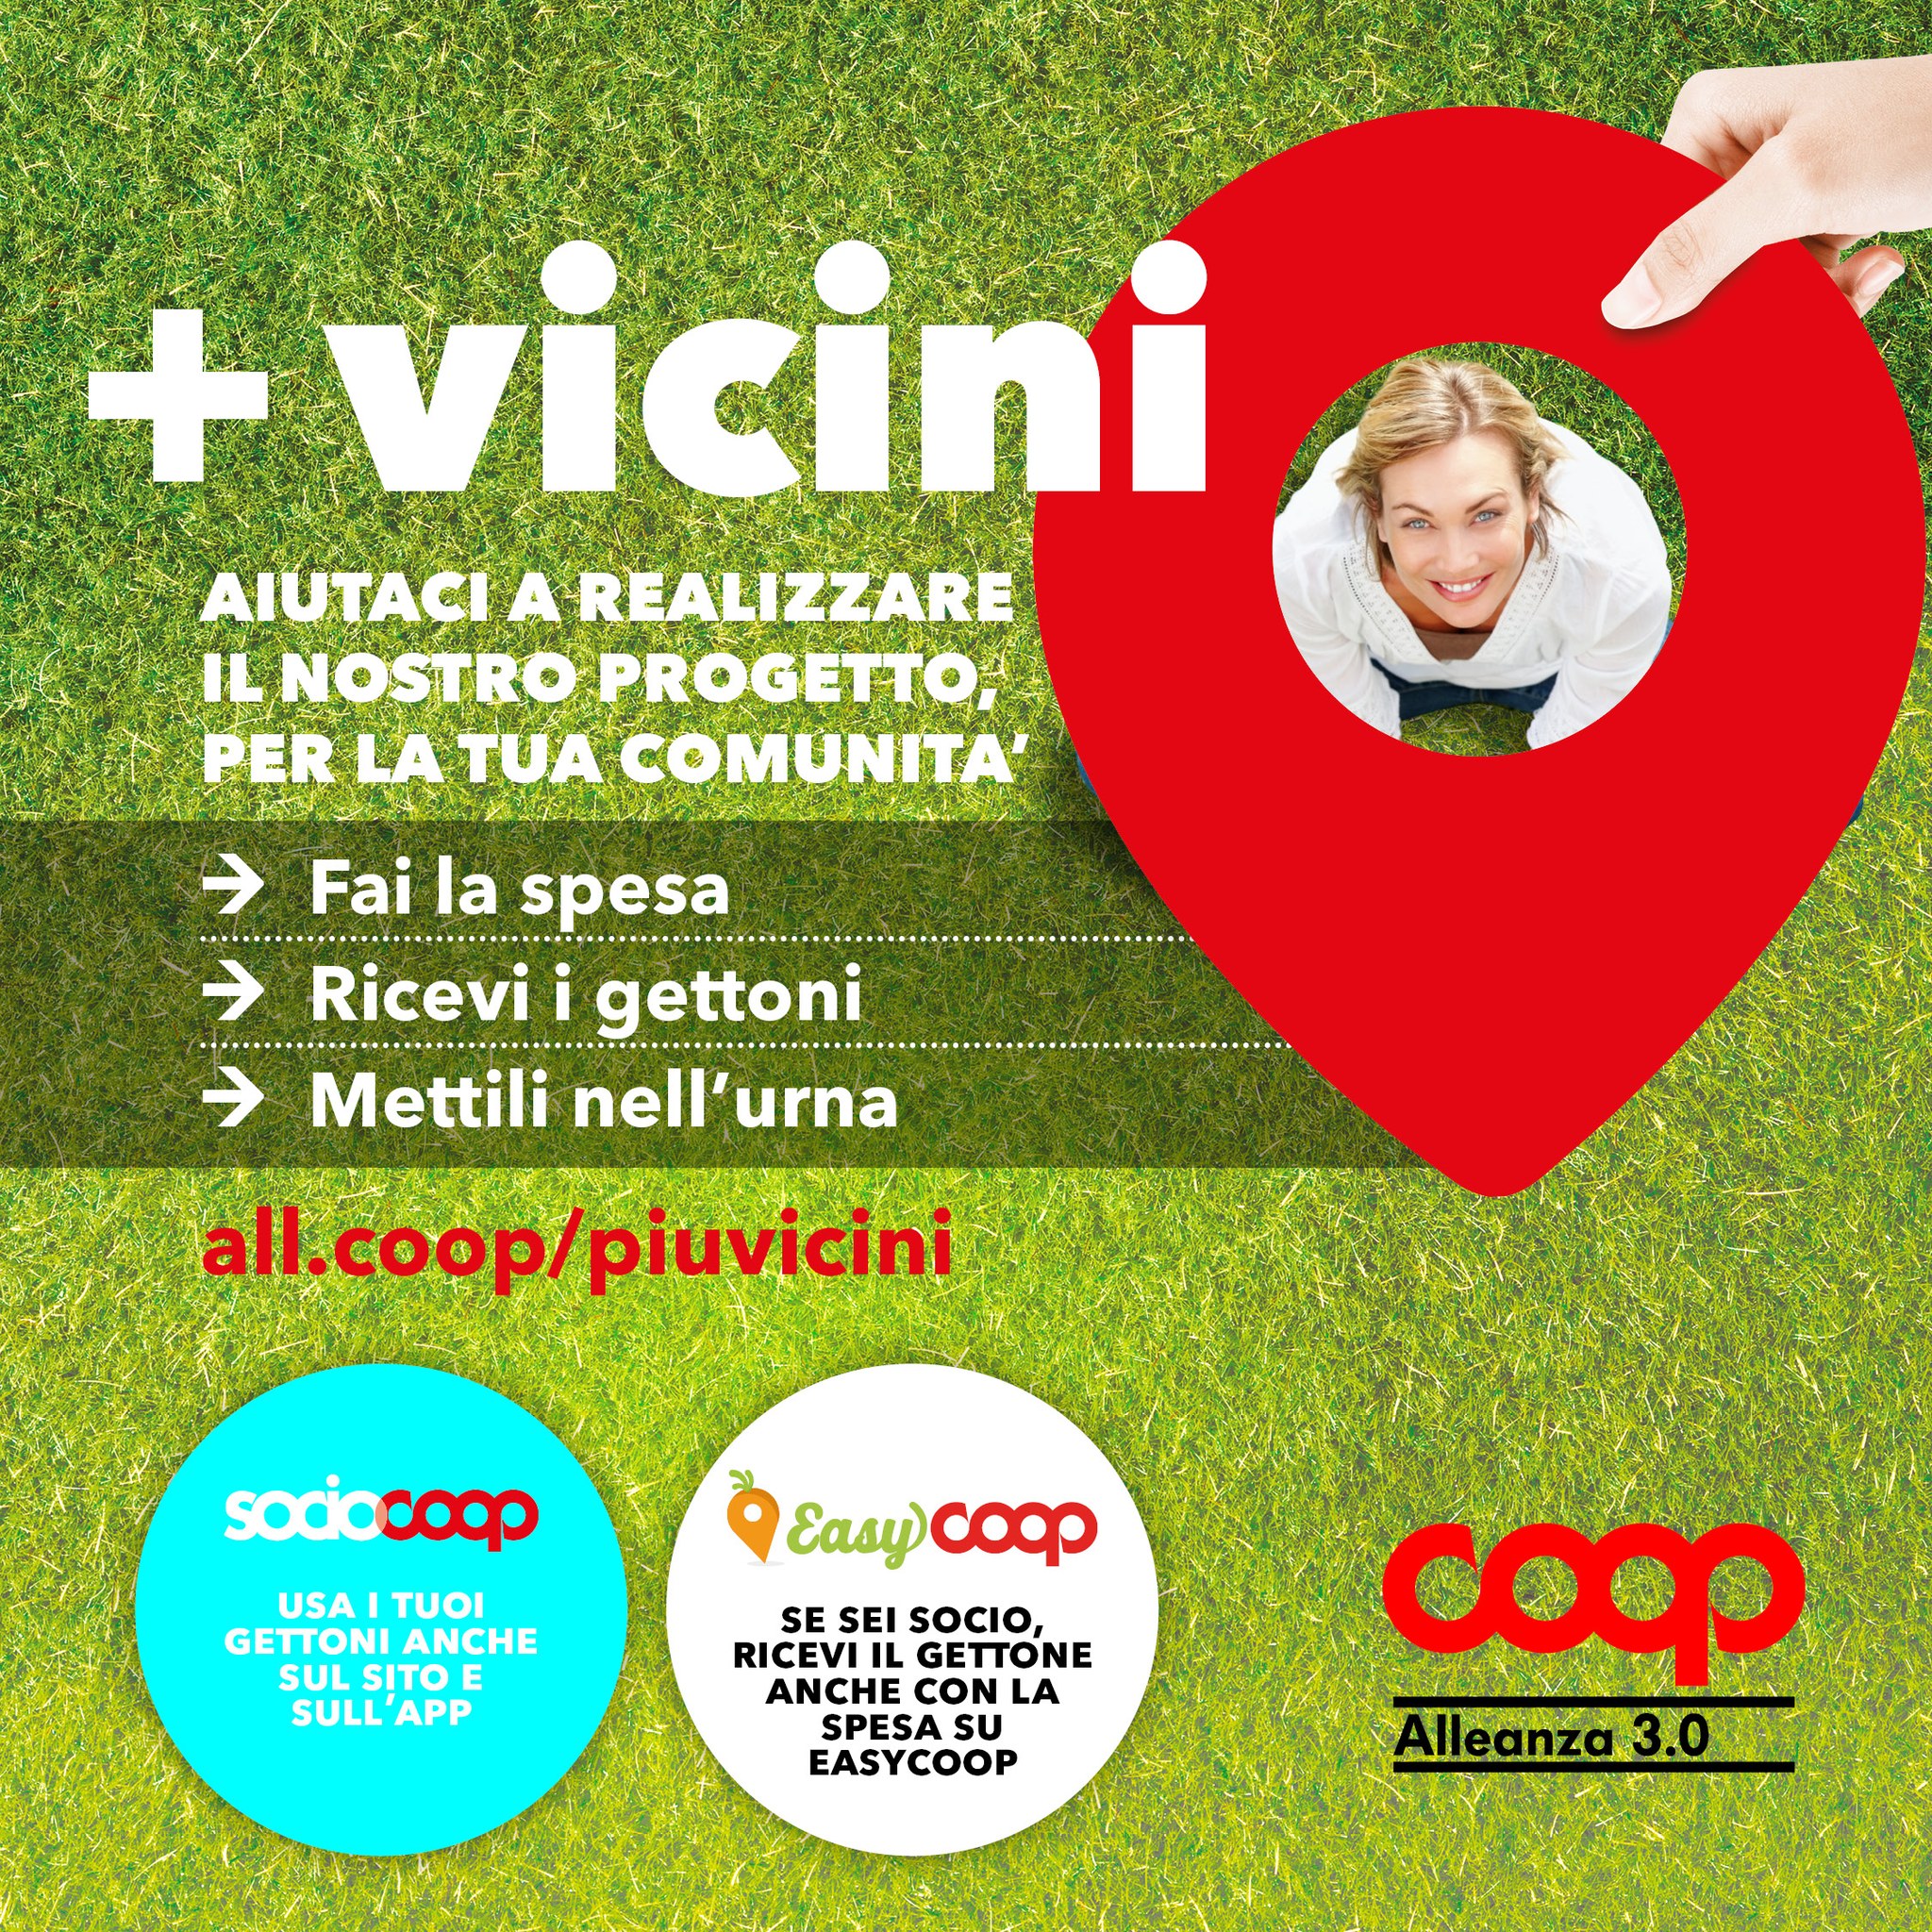 Fondazione Luchetta + Vicini